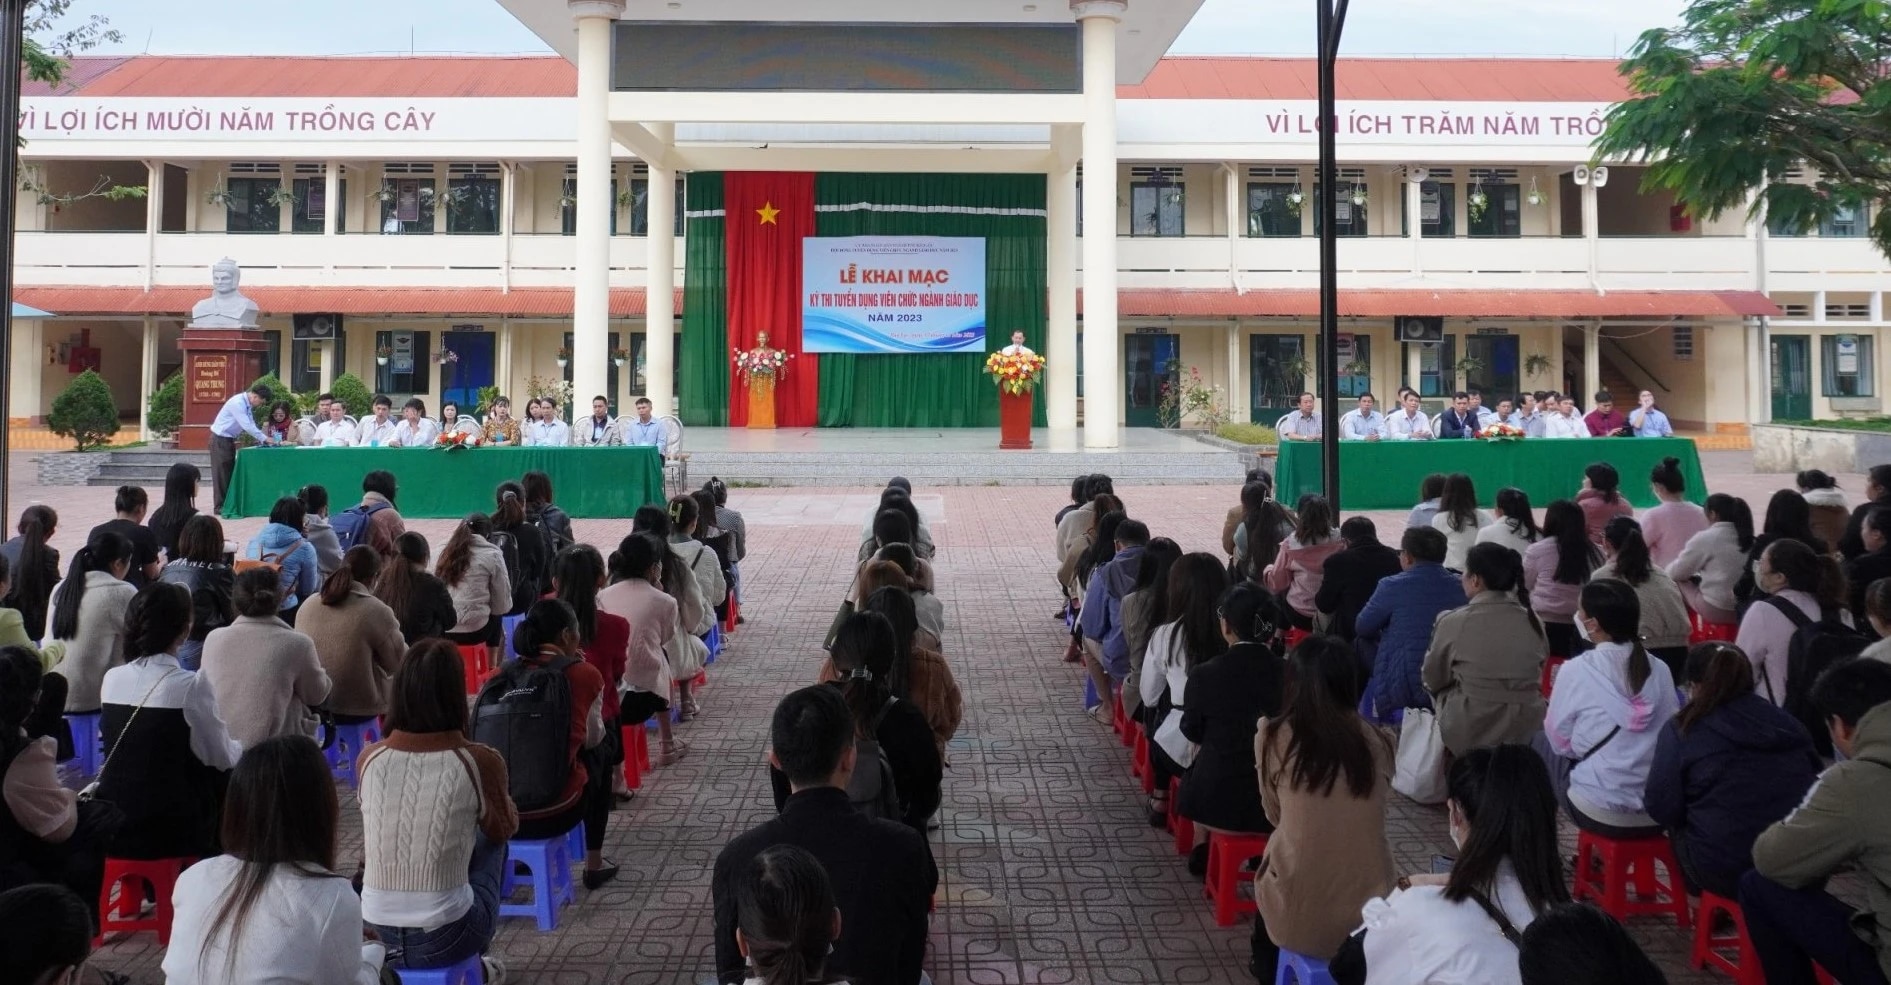 Lâm Đồng: Chấm dứt lao động với 13 giáo viên, nhân viên sử dụng chứng chỉ giả- Ảnh 2.